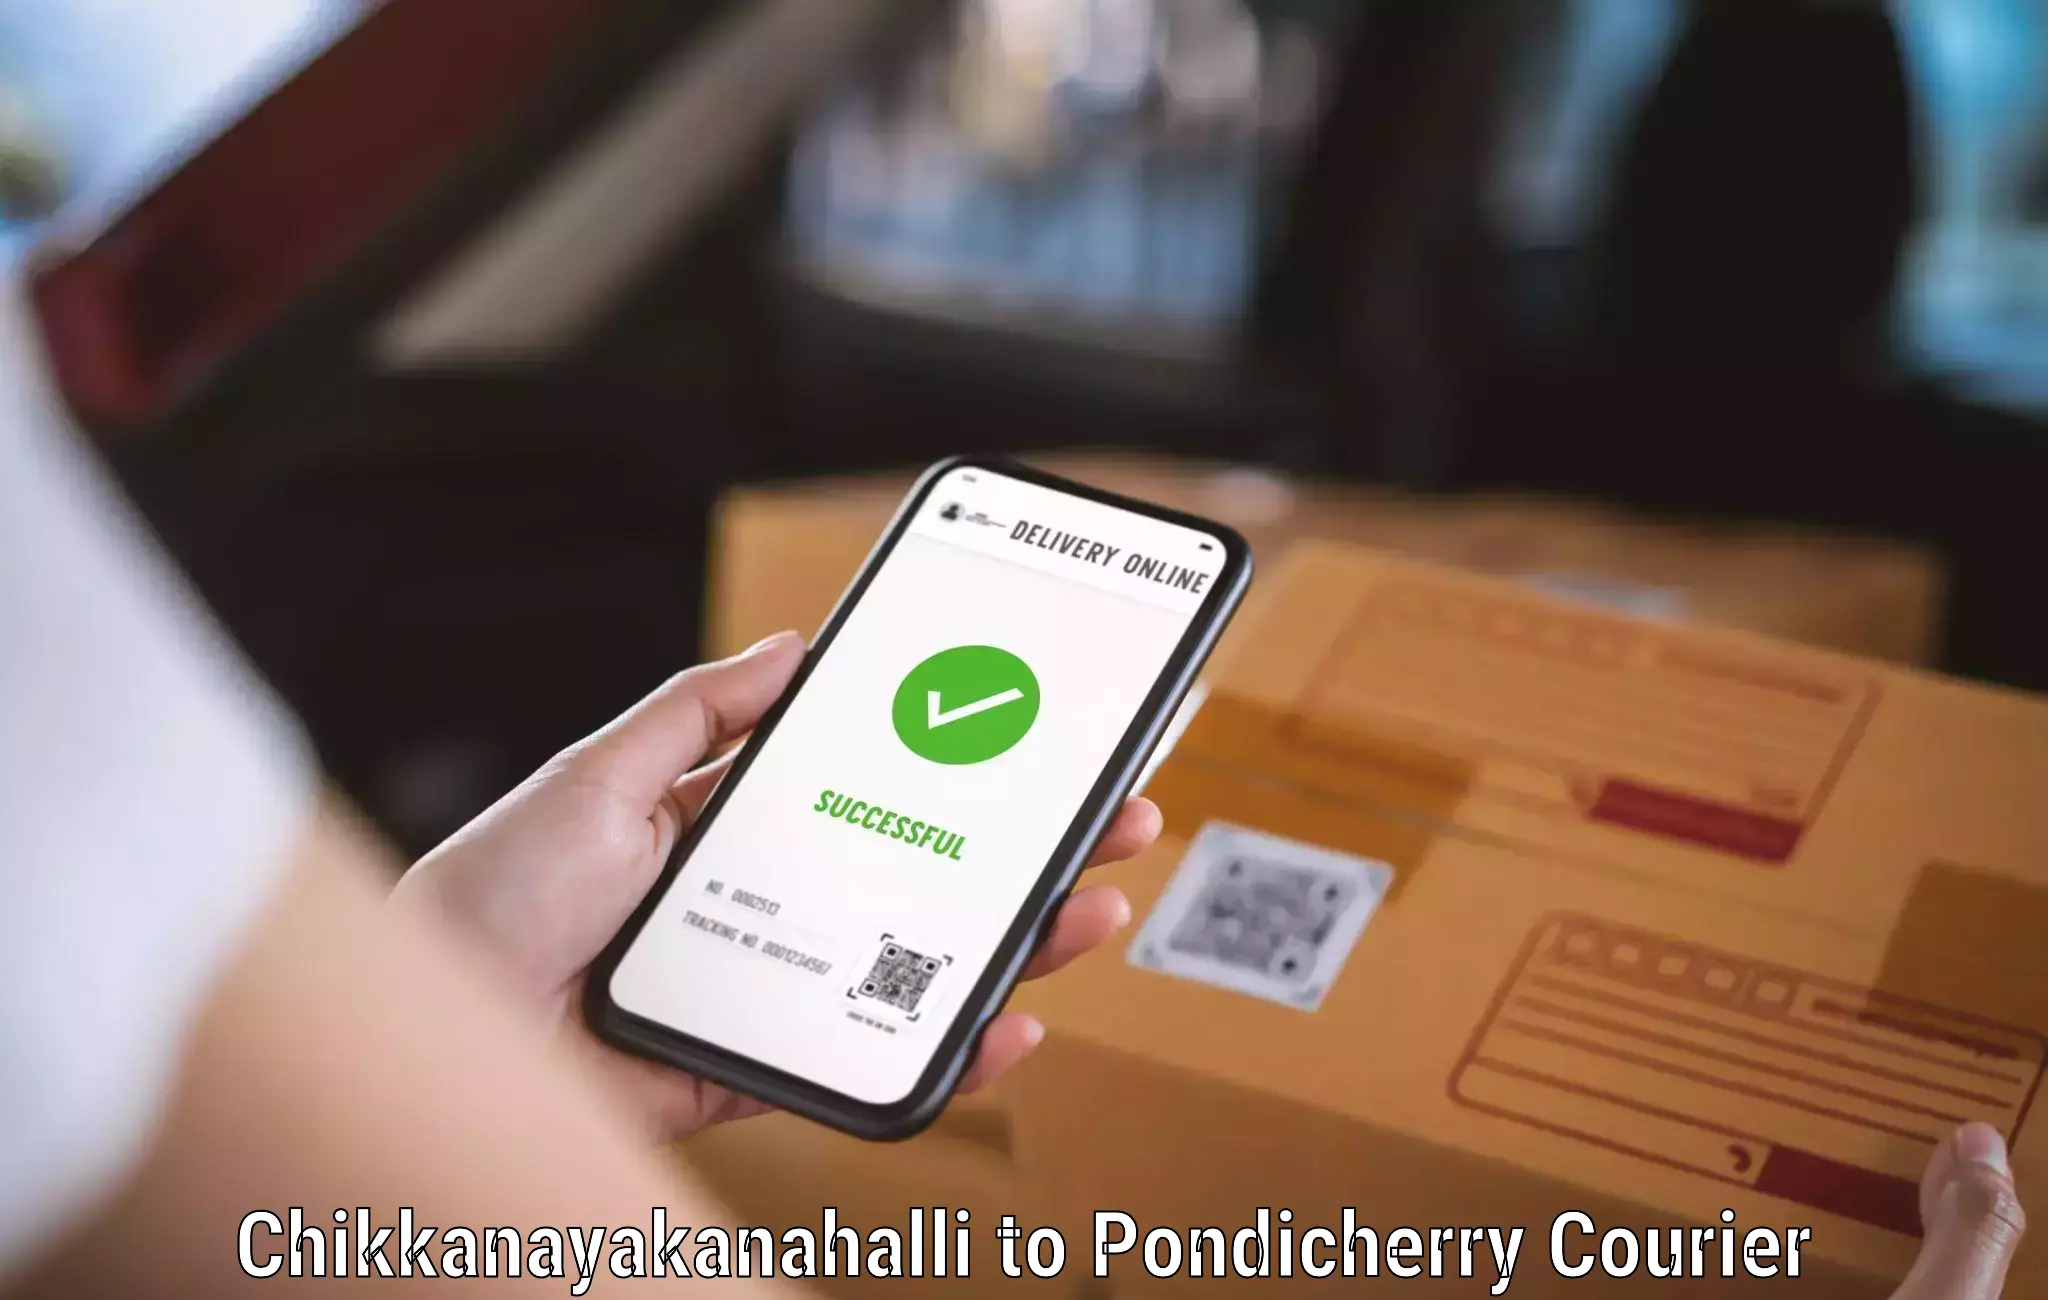 Fast shipping solutions Chikkanayakanahalli to Pondicherry University